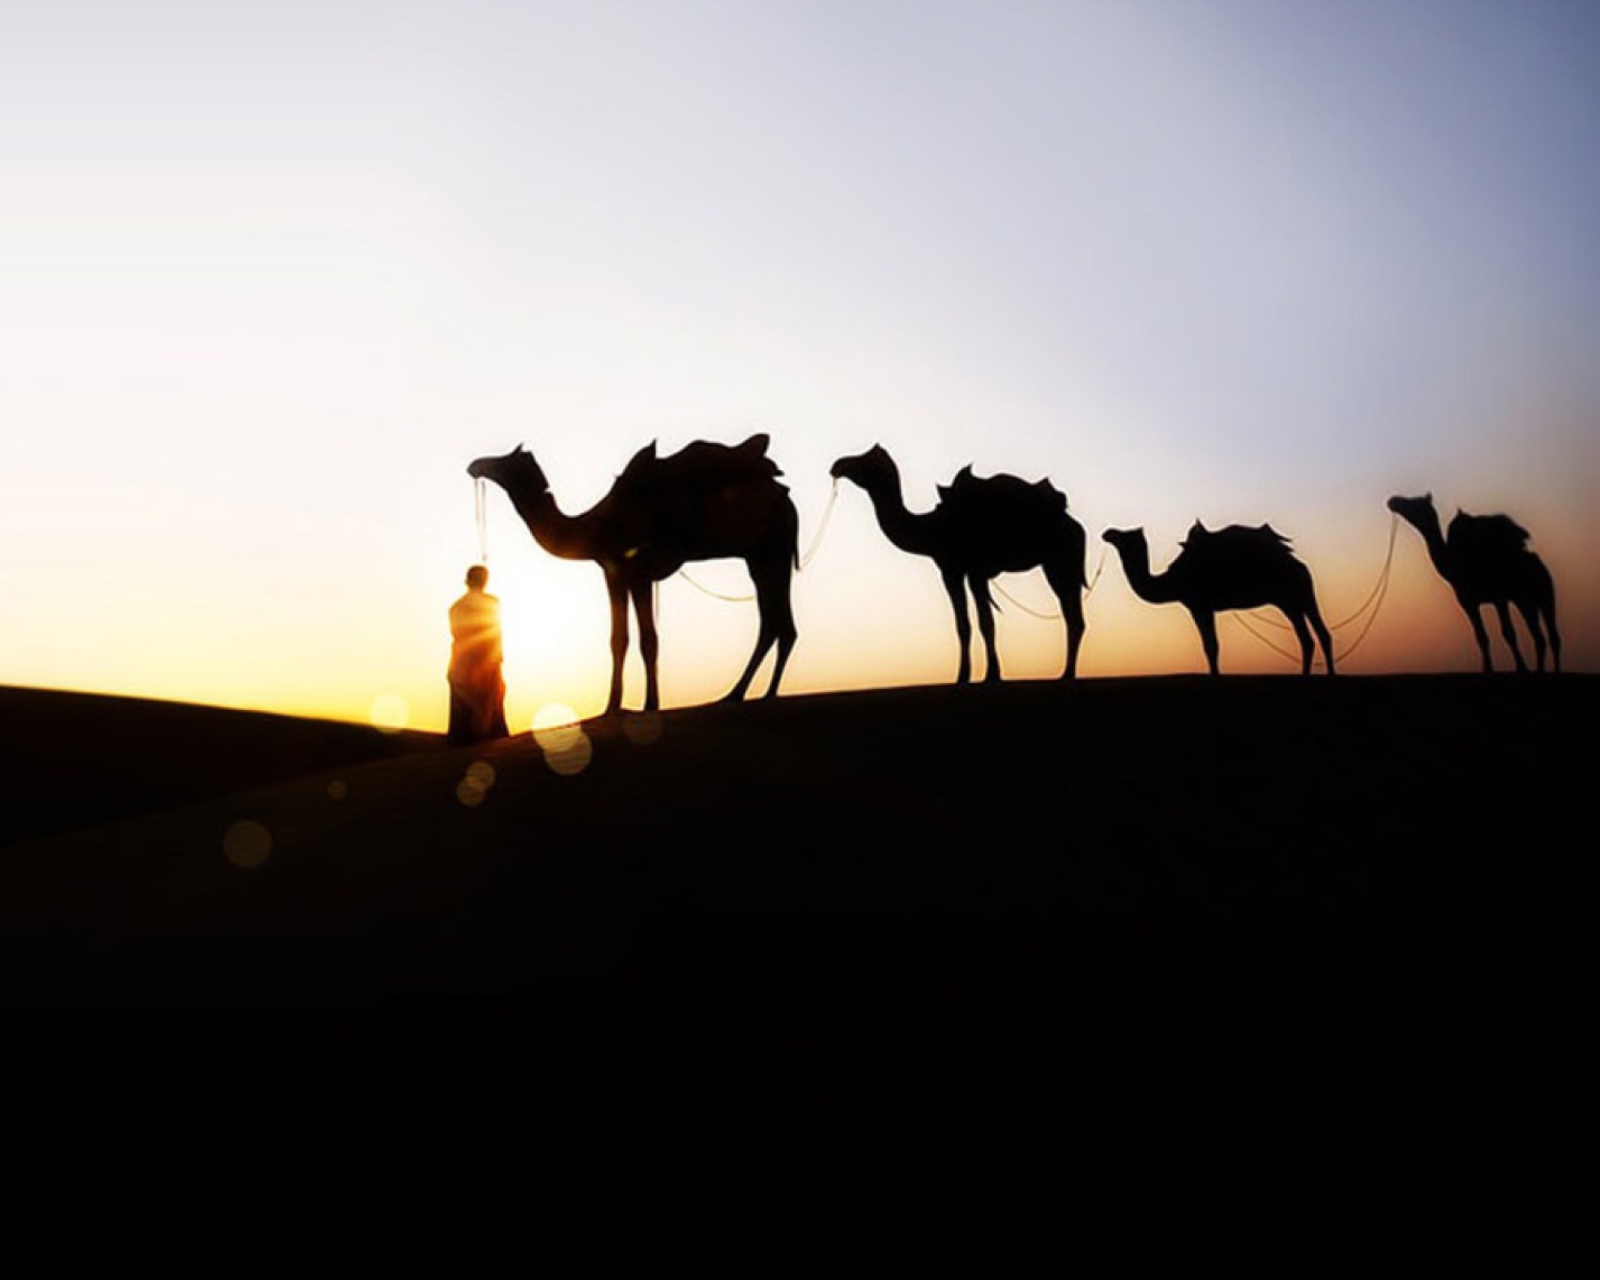 Обои Camel At Sunset 1600x1280